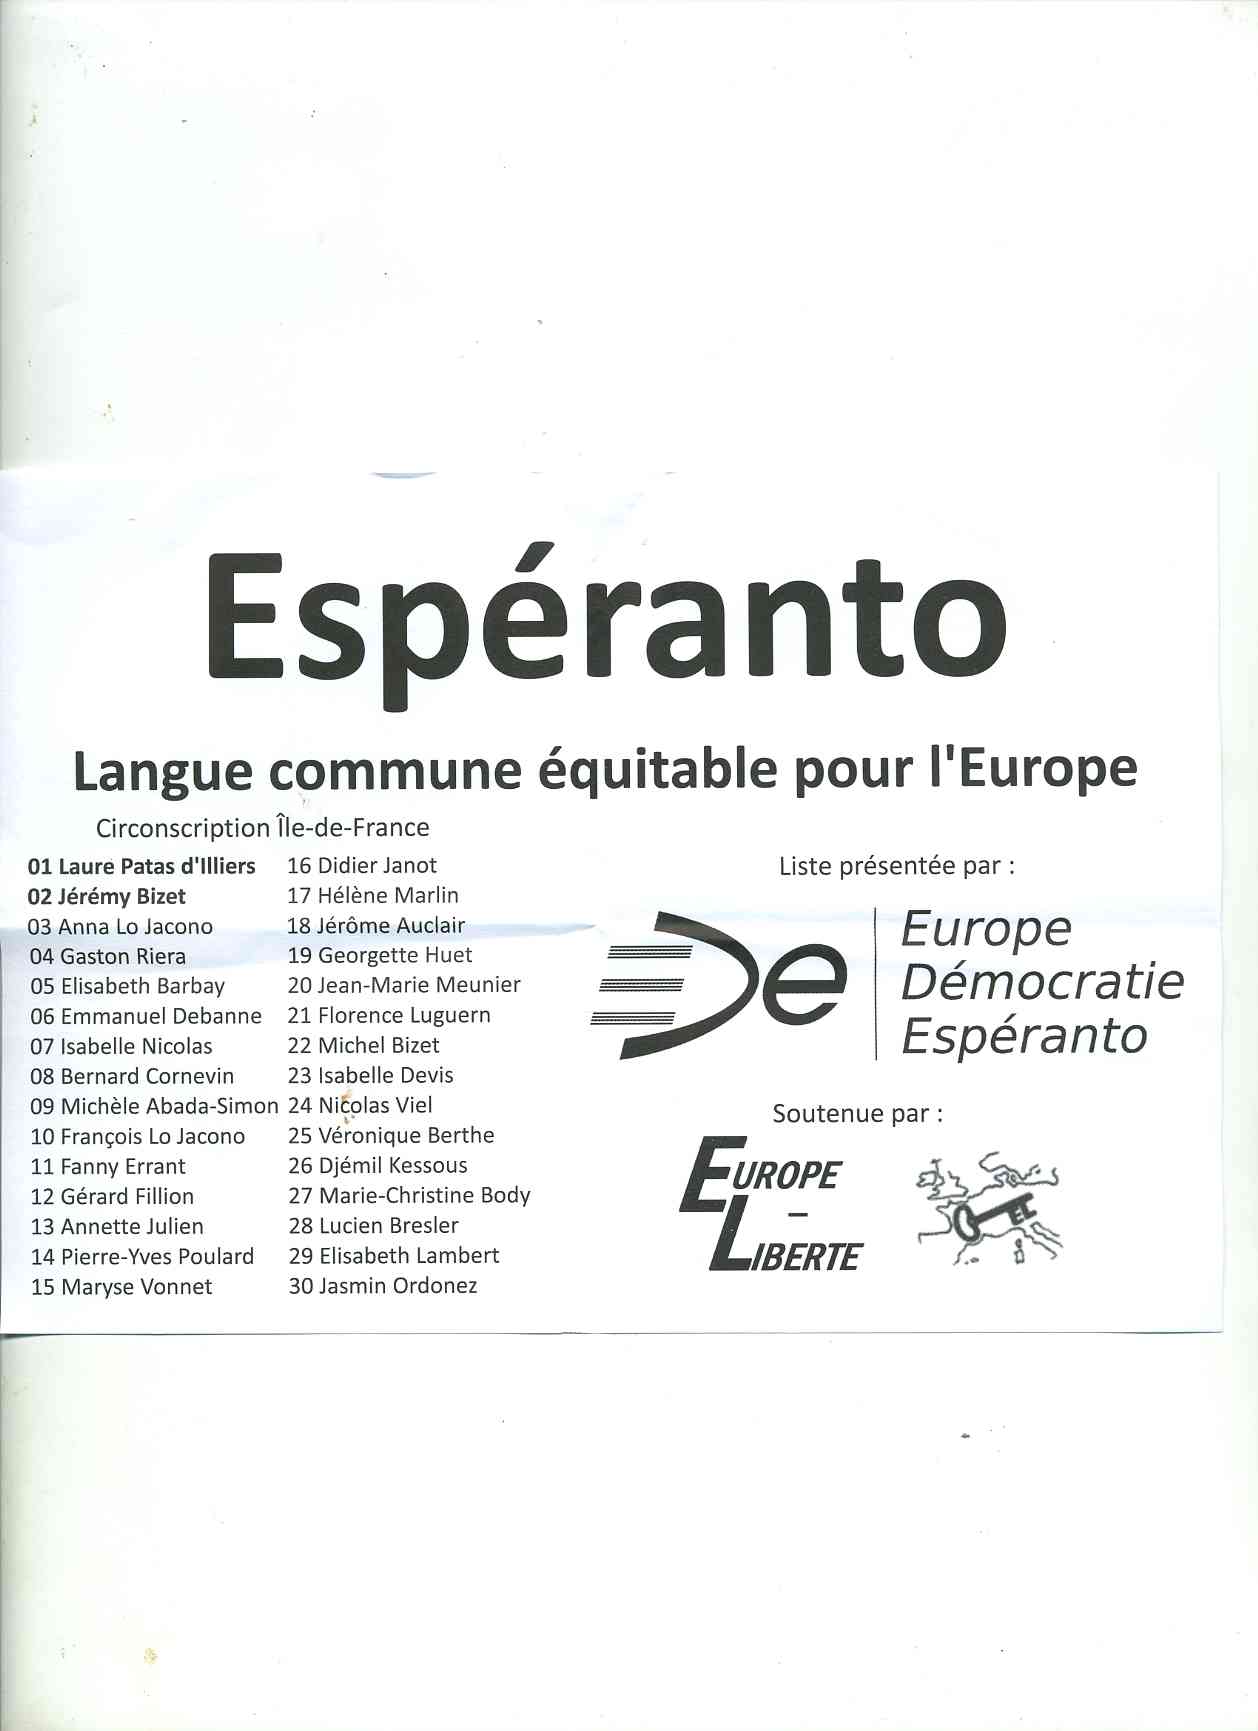 Liste esperanto.jpg